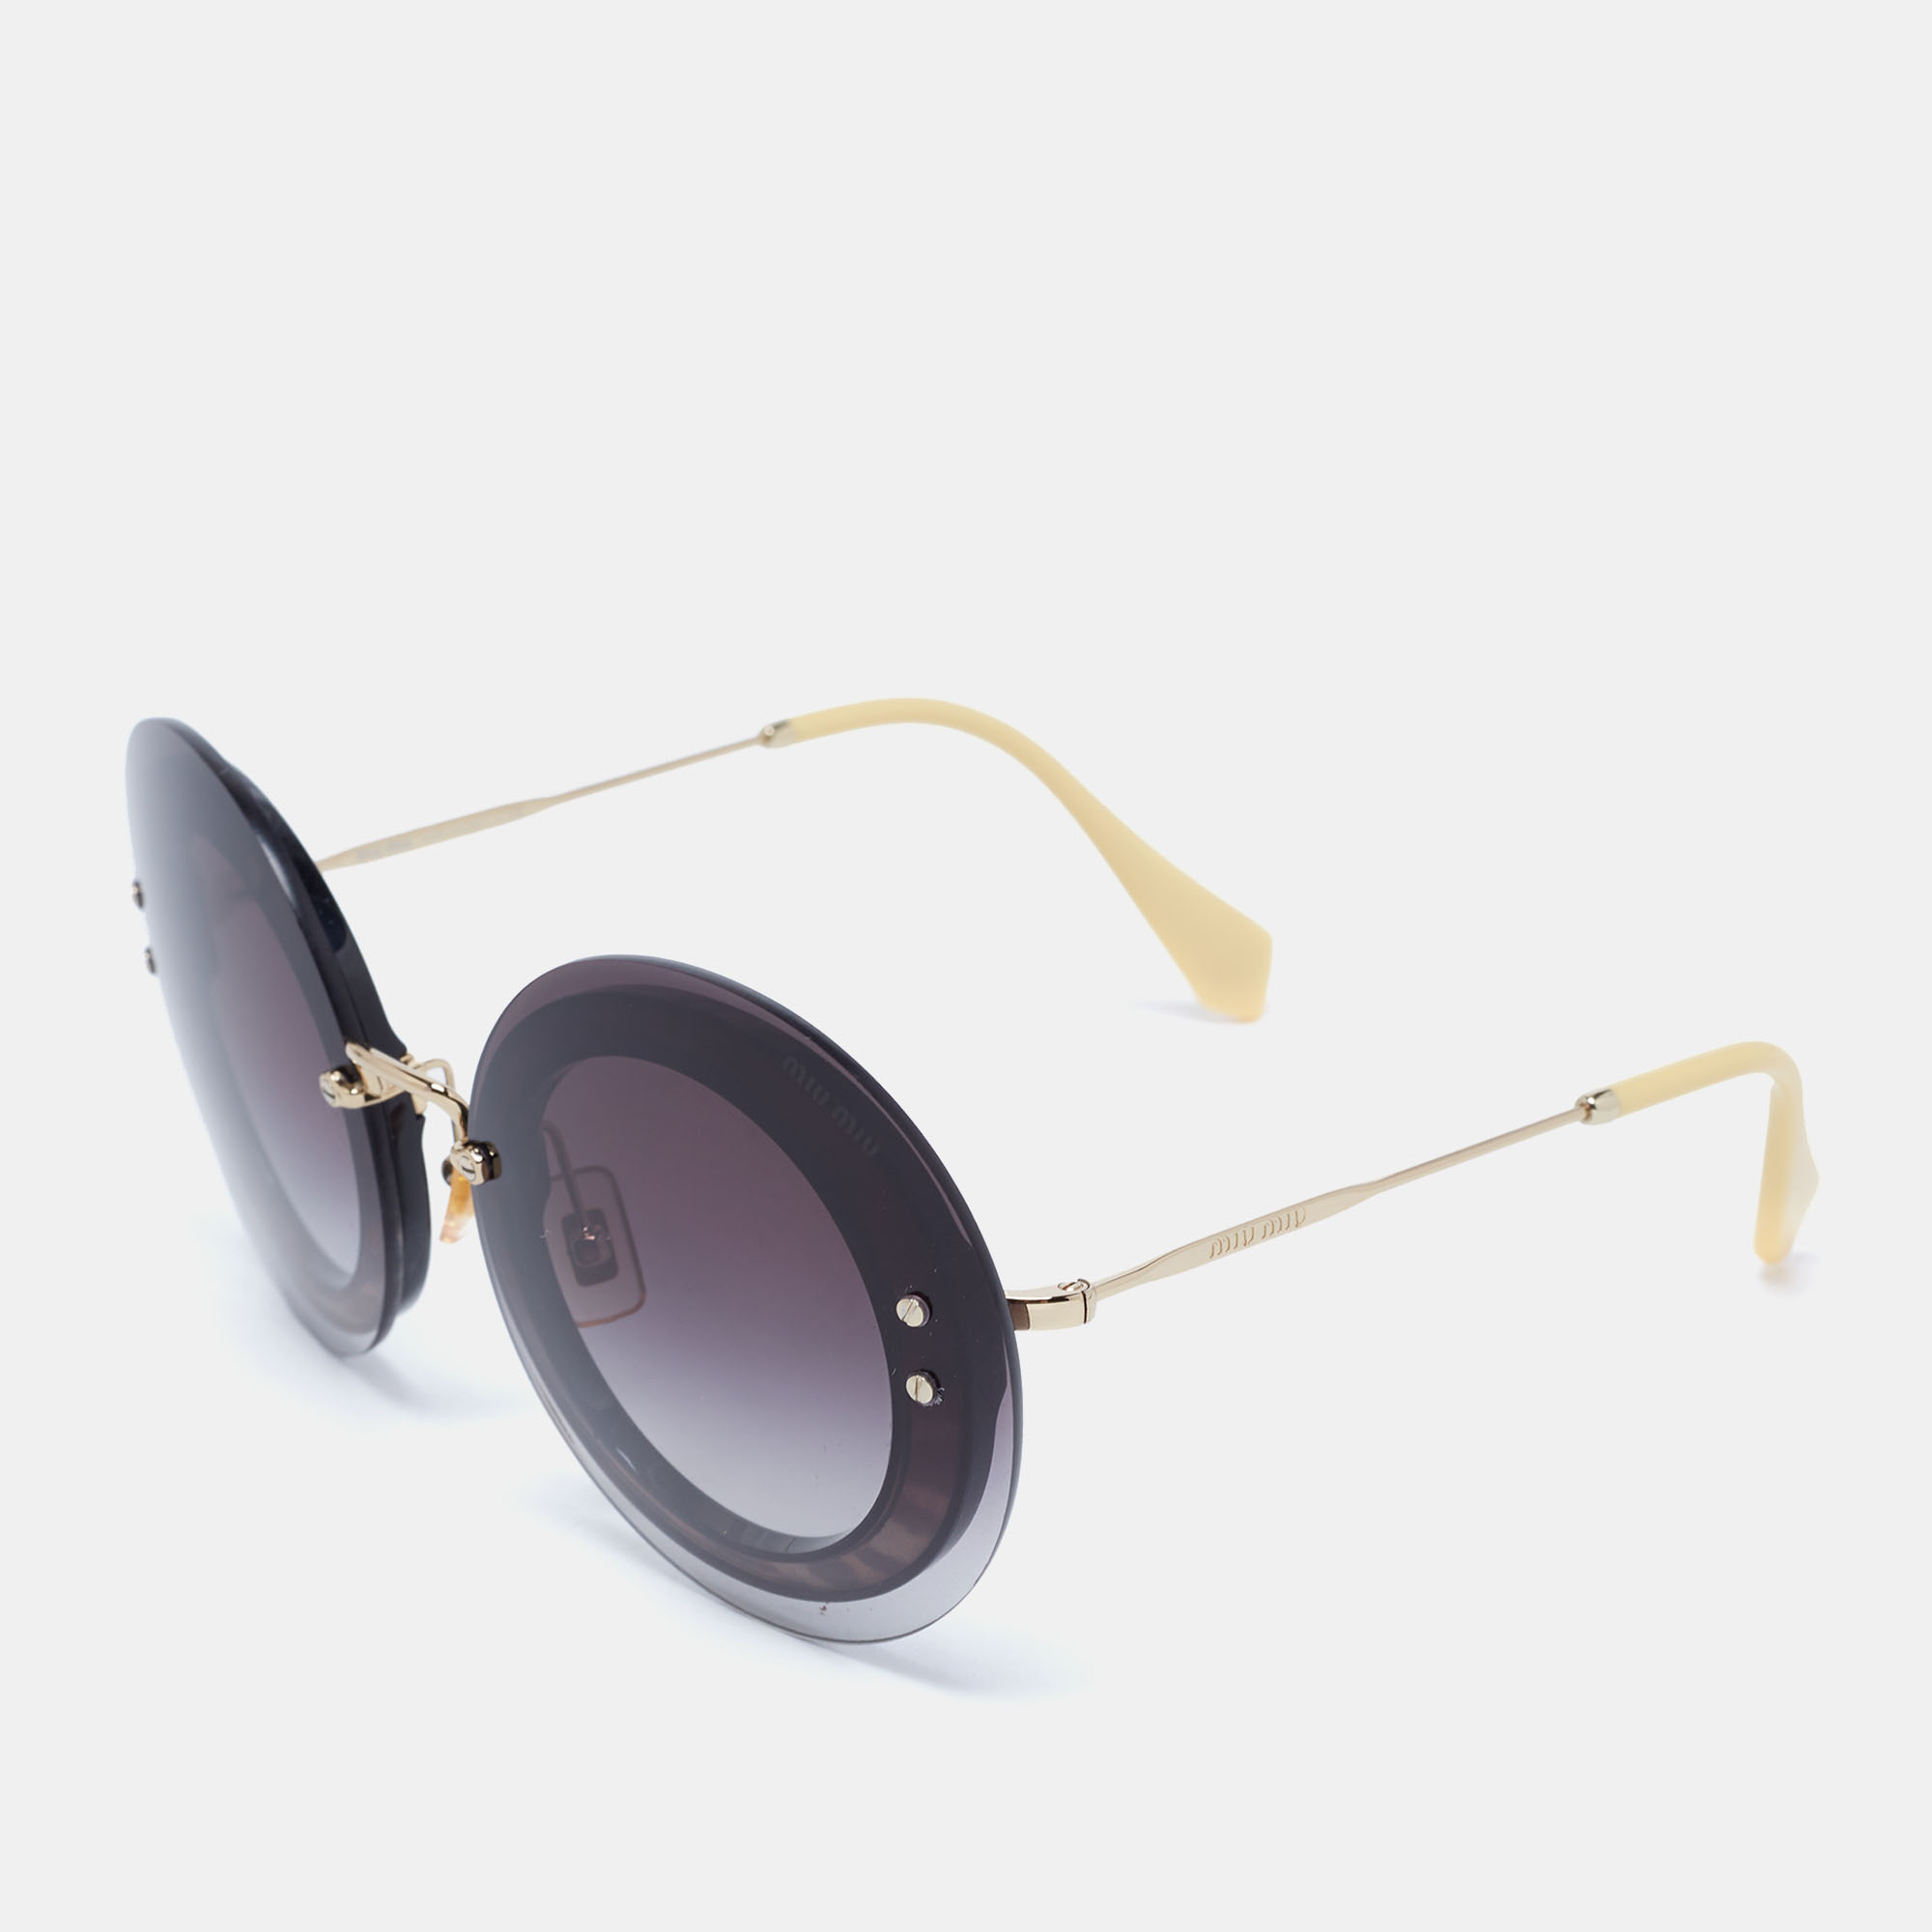 

Miu Miu Gold Tone / Grey Gradient SMU 10R Round Sunglasses